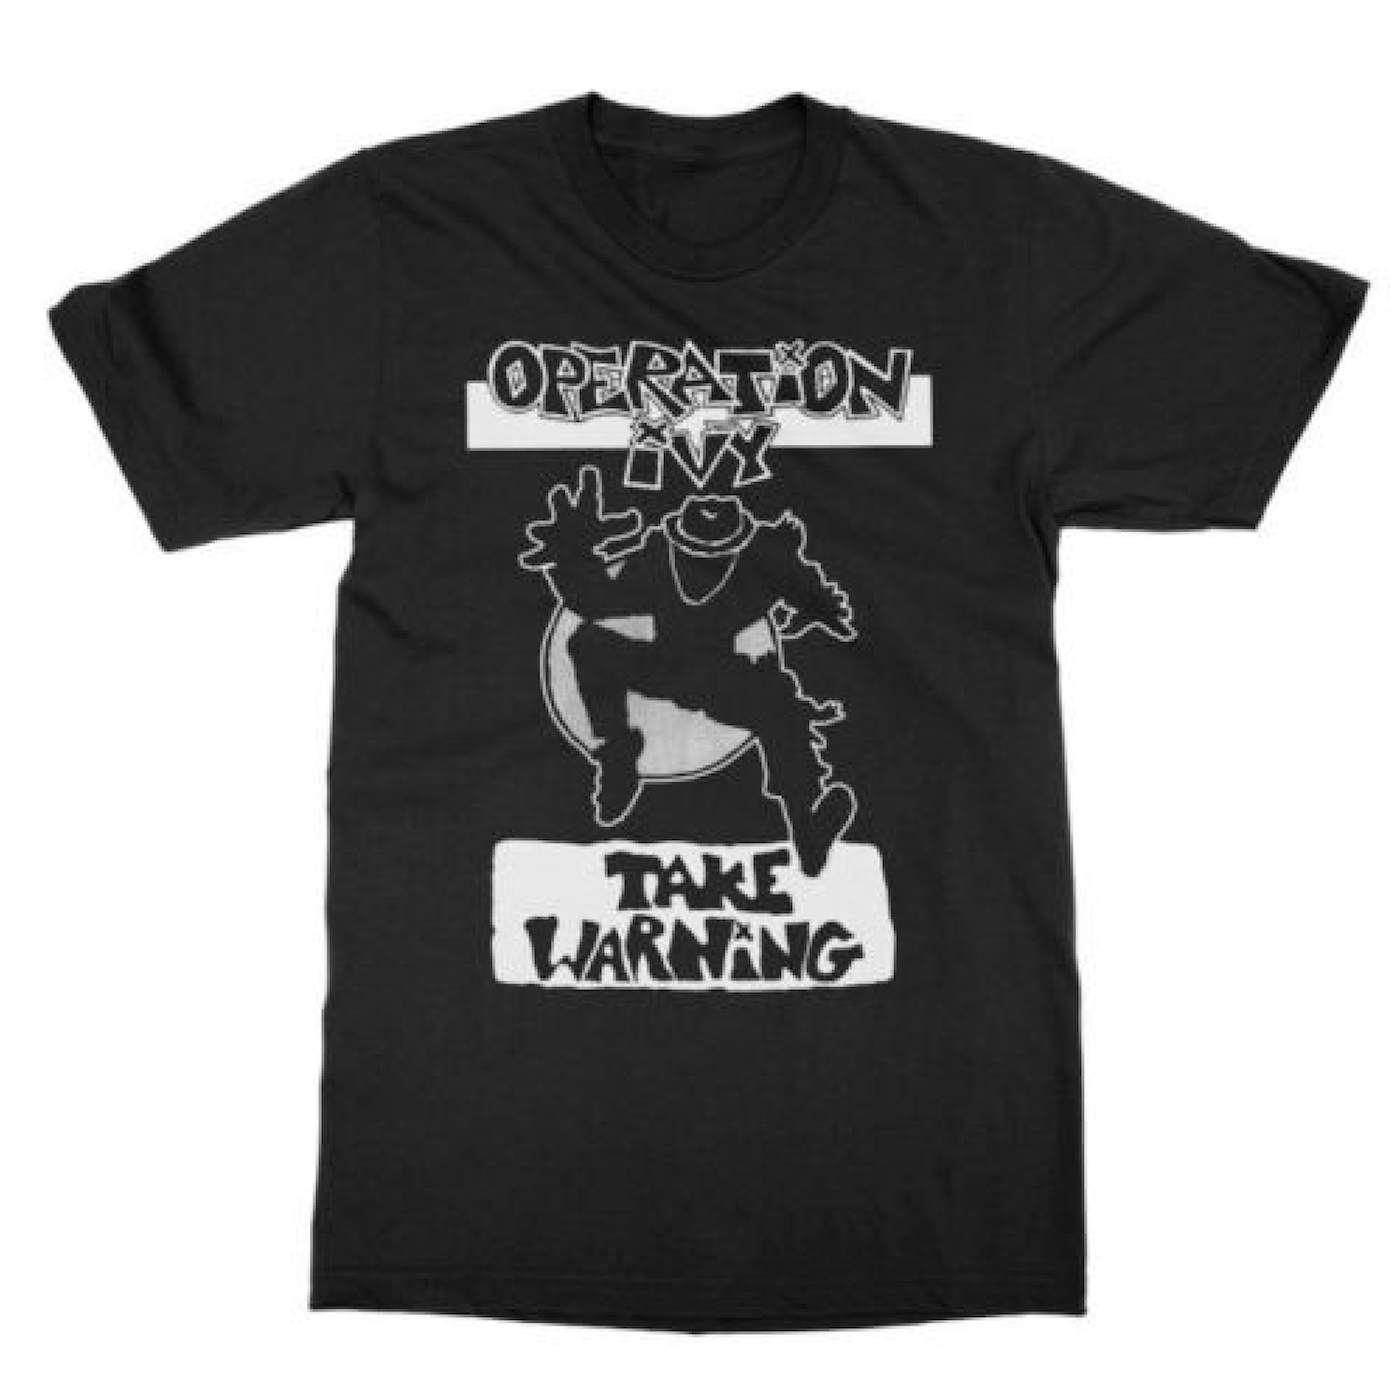 Operation Ivy "Take Warning" T-Shirt